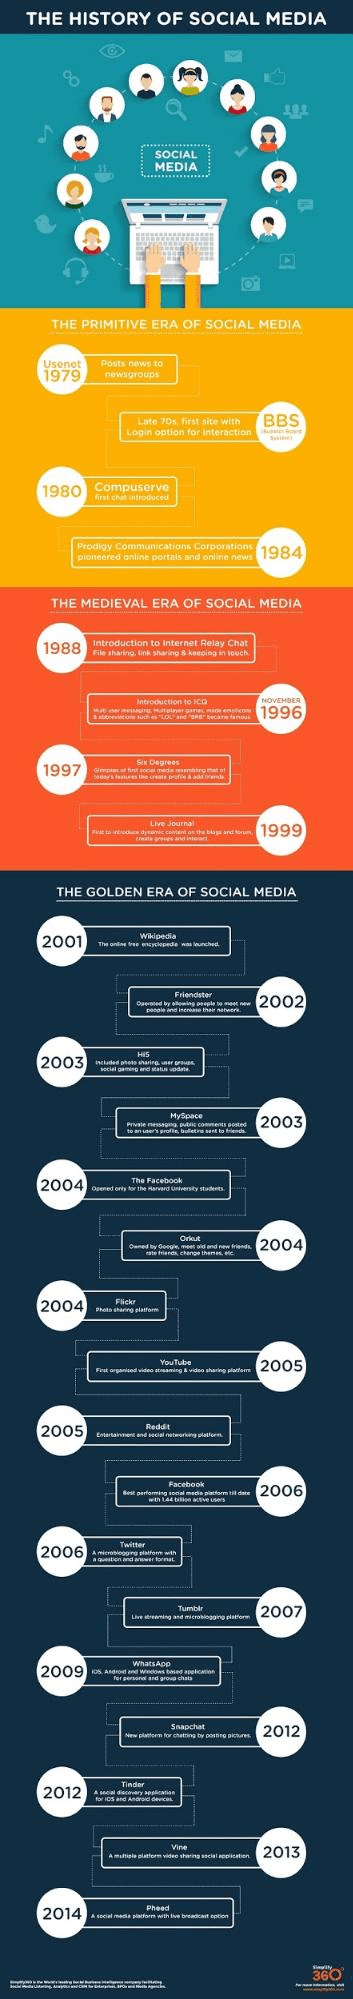 history of social media. 